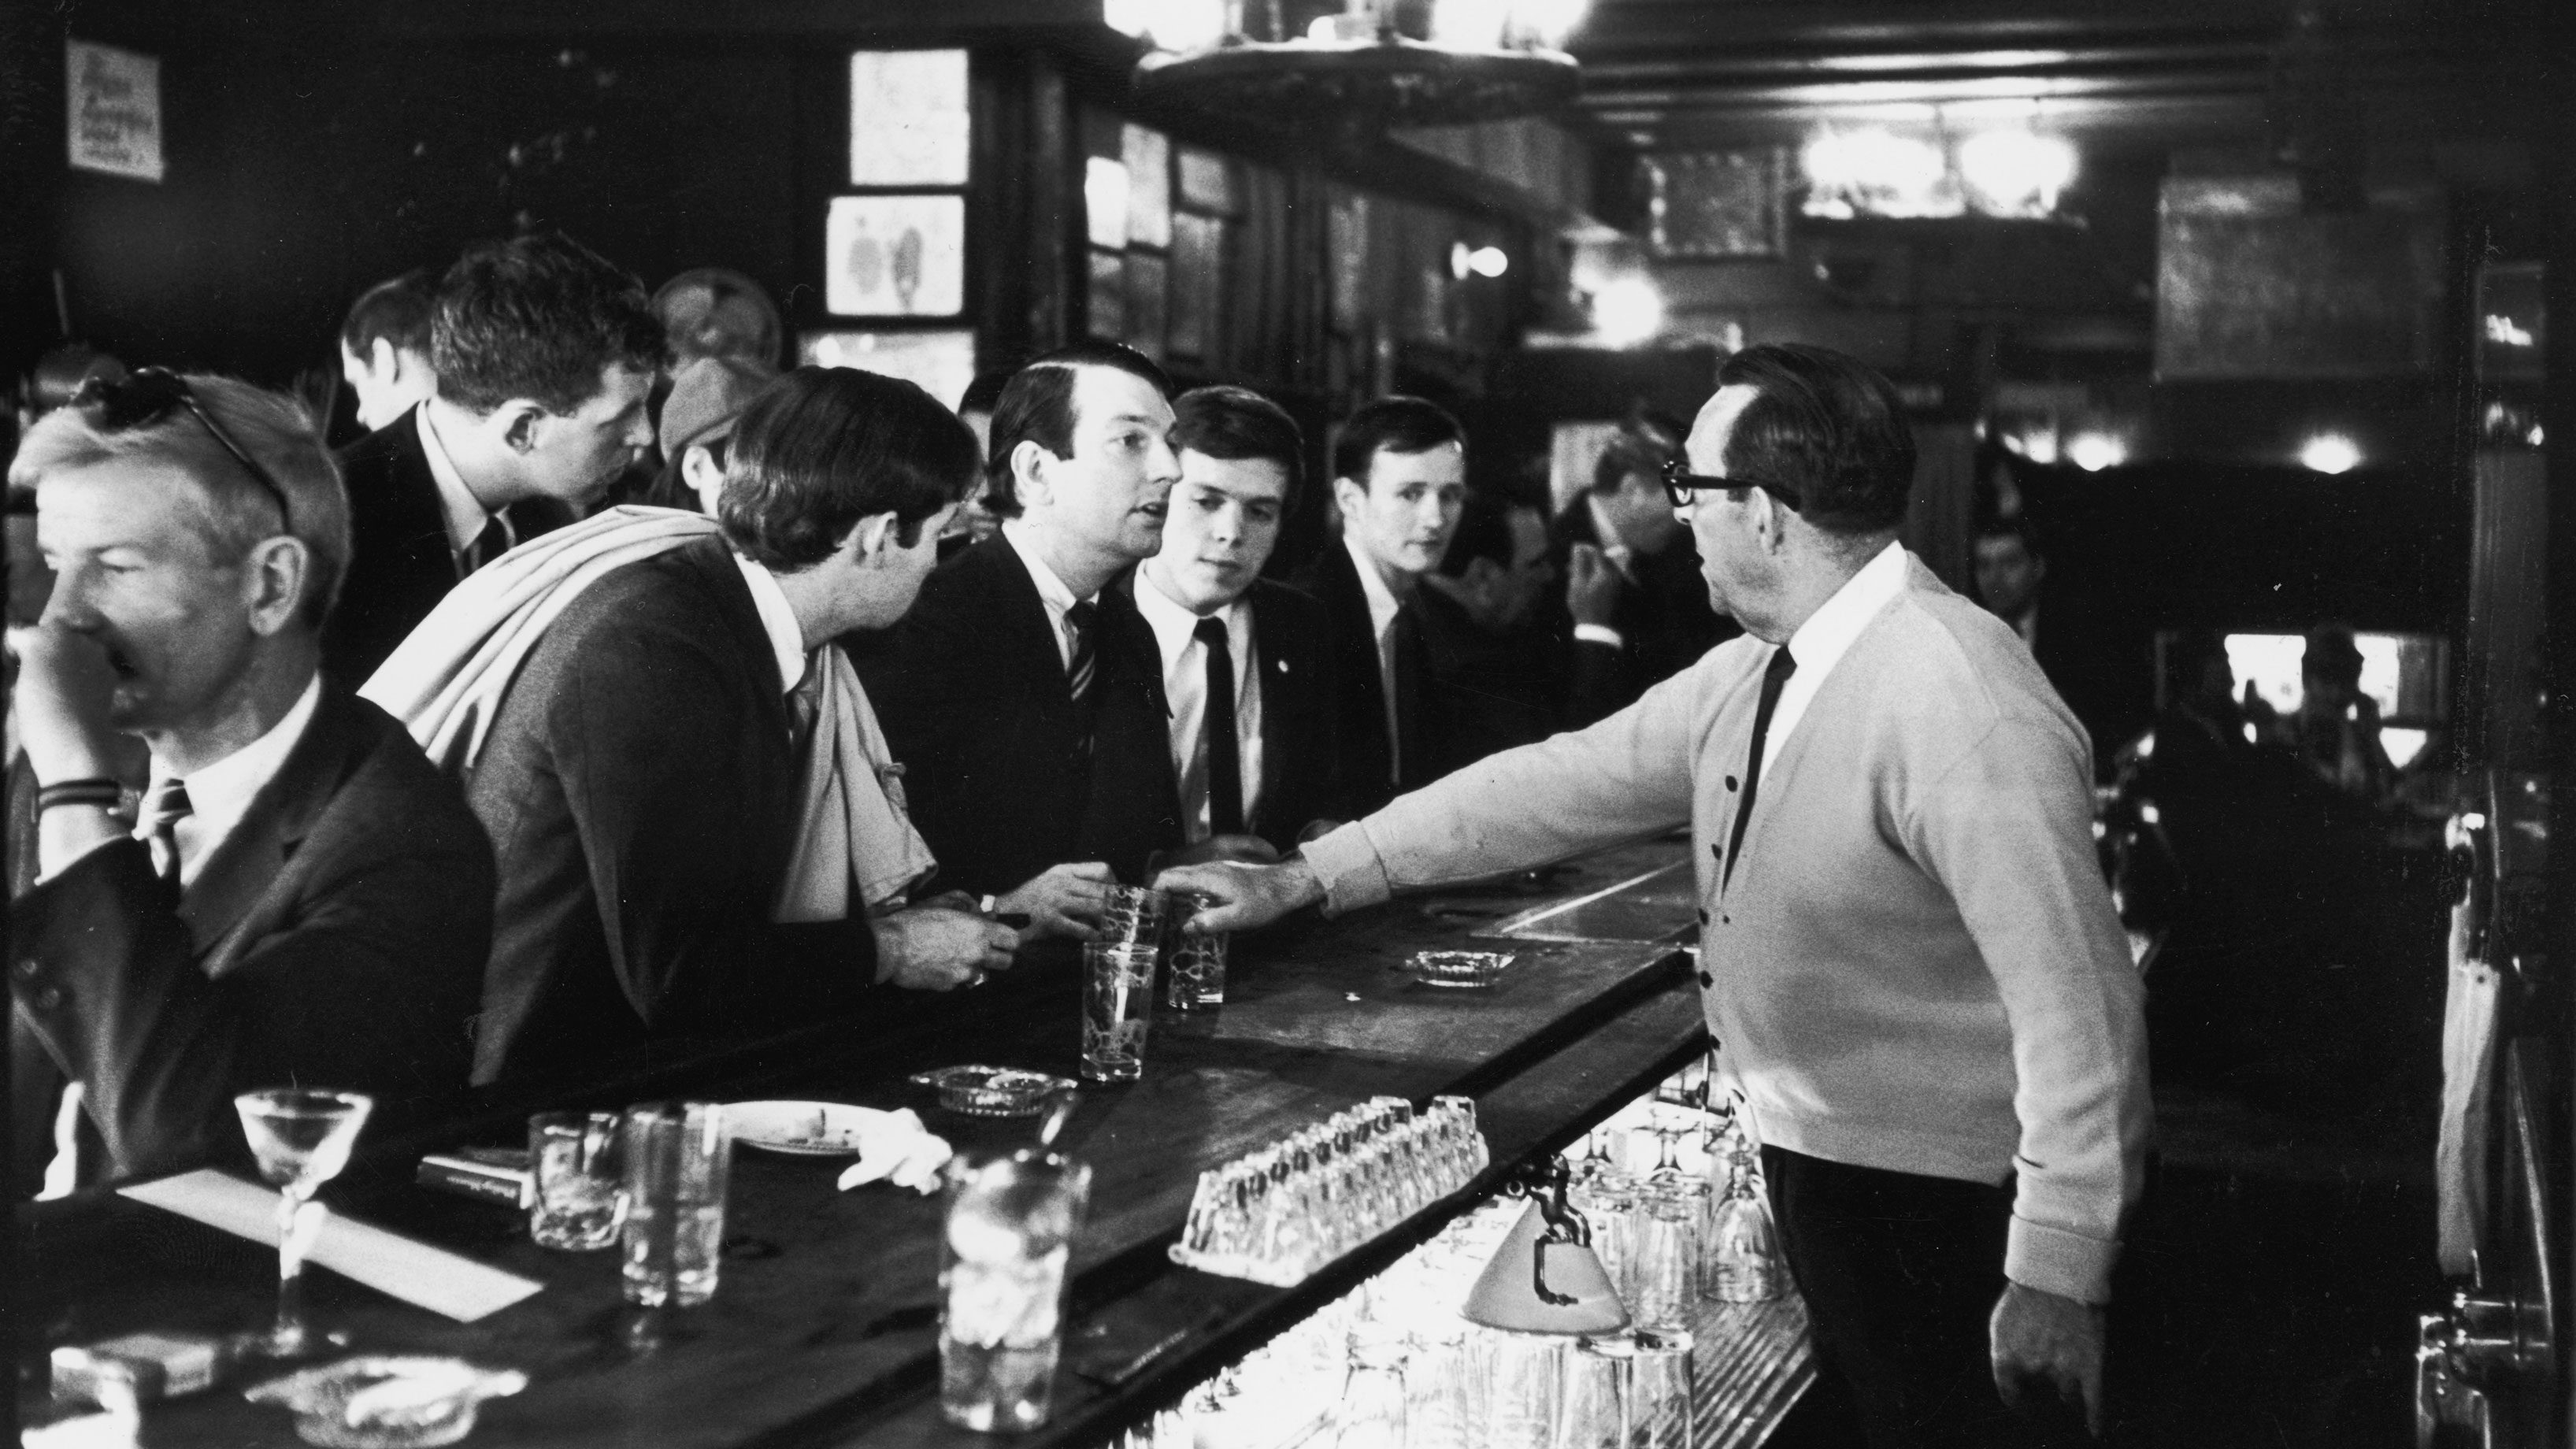 bartender takes drink of men sitting at bar